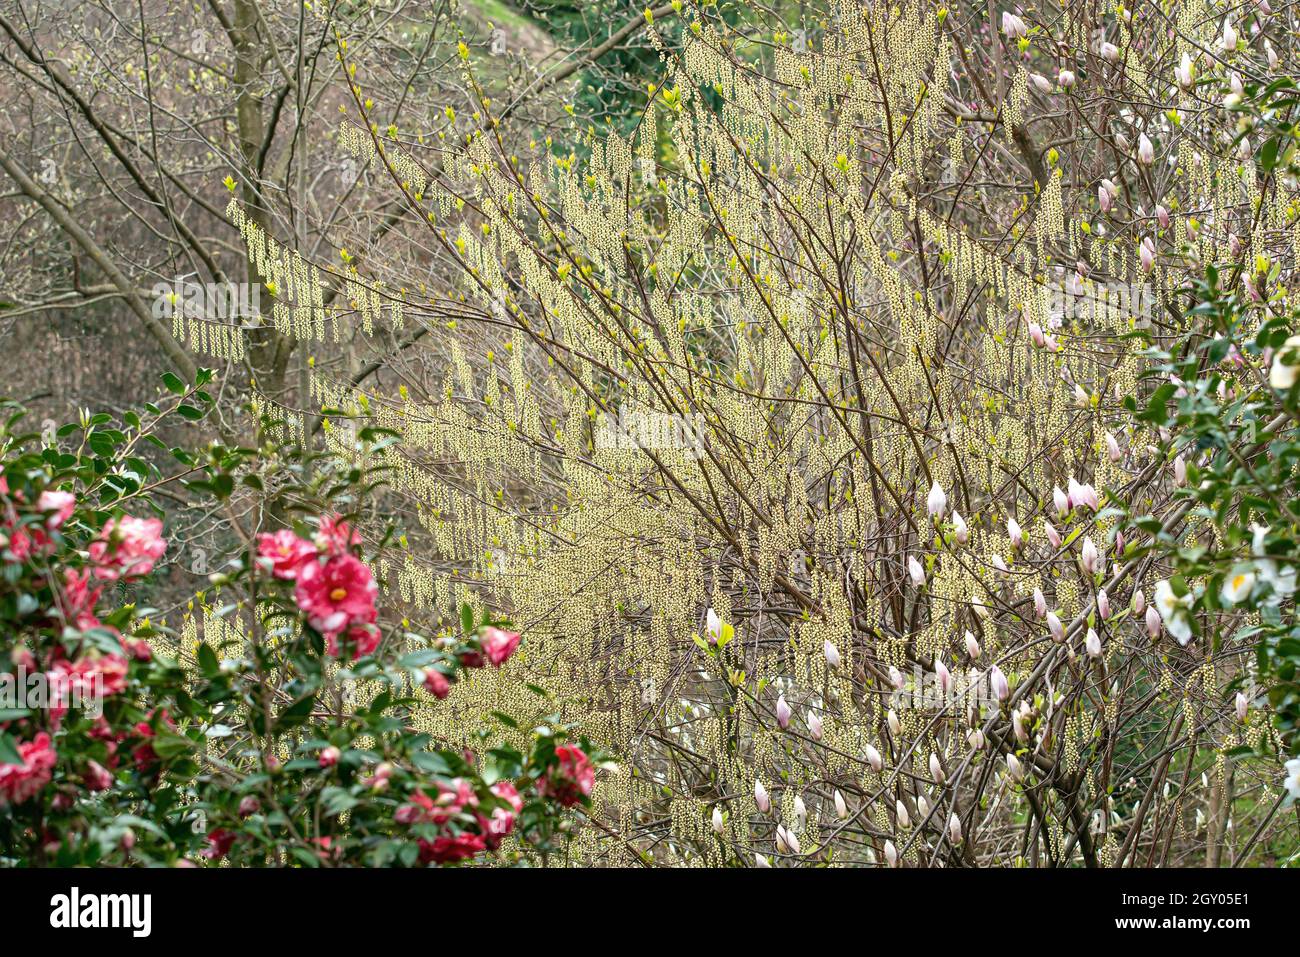 Spiketail, Kibusi (Stachyurus praecox), blooming shrub, Switzerland Stock Photo